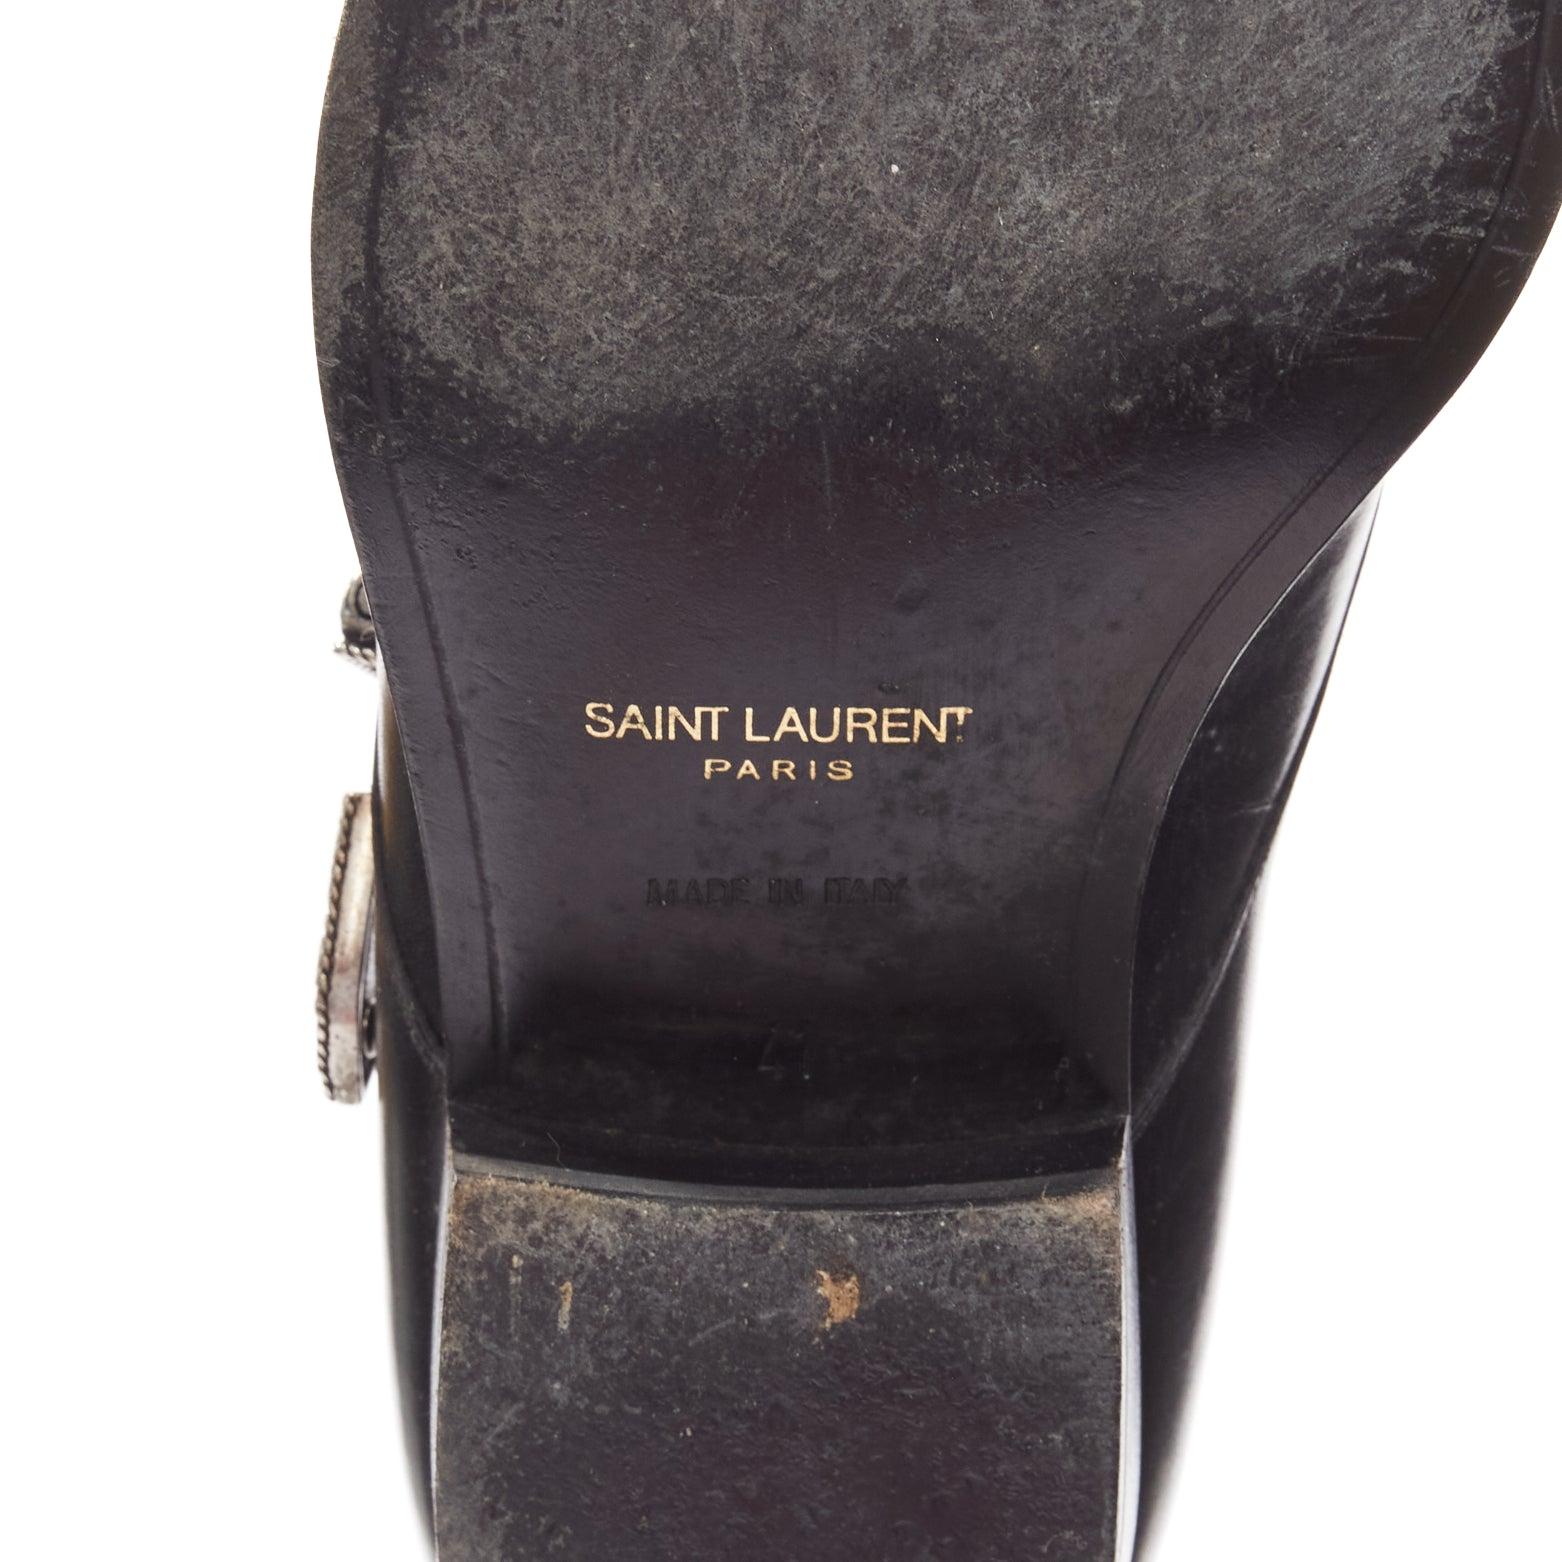 SAINT LAURENT Duckies 25 2014 black western buckle monkstrap shoes EU41 7